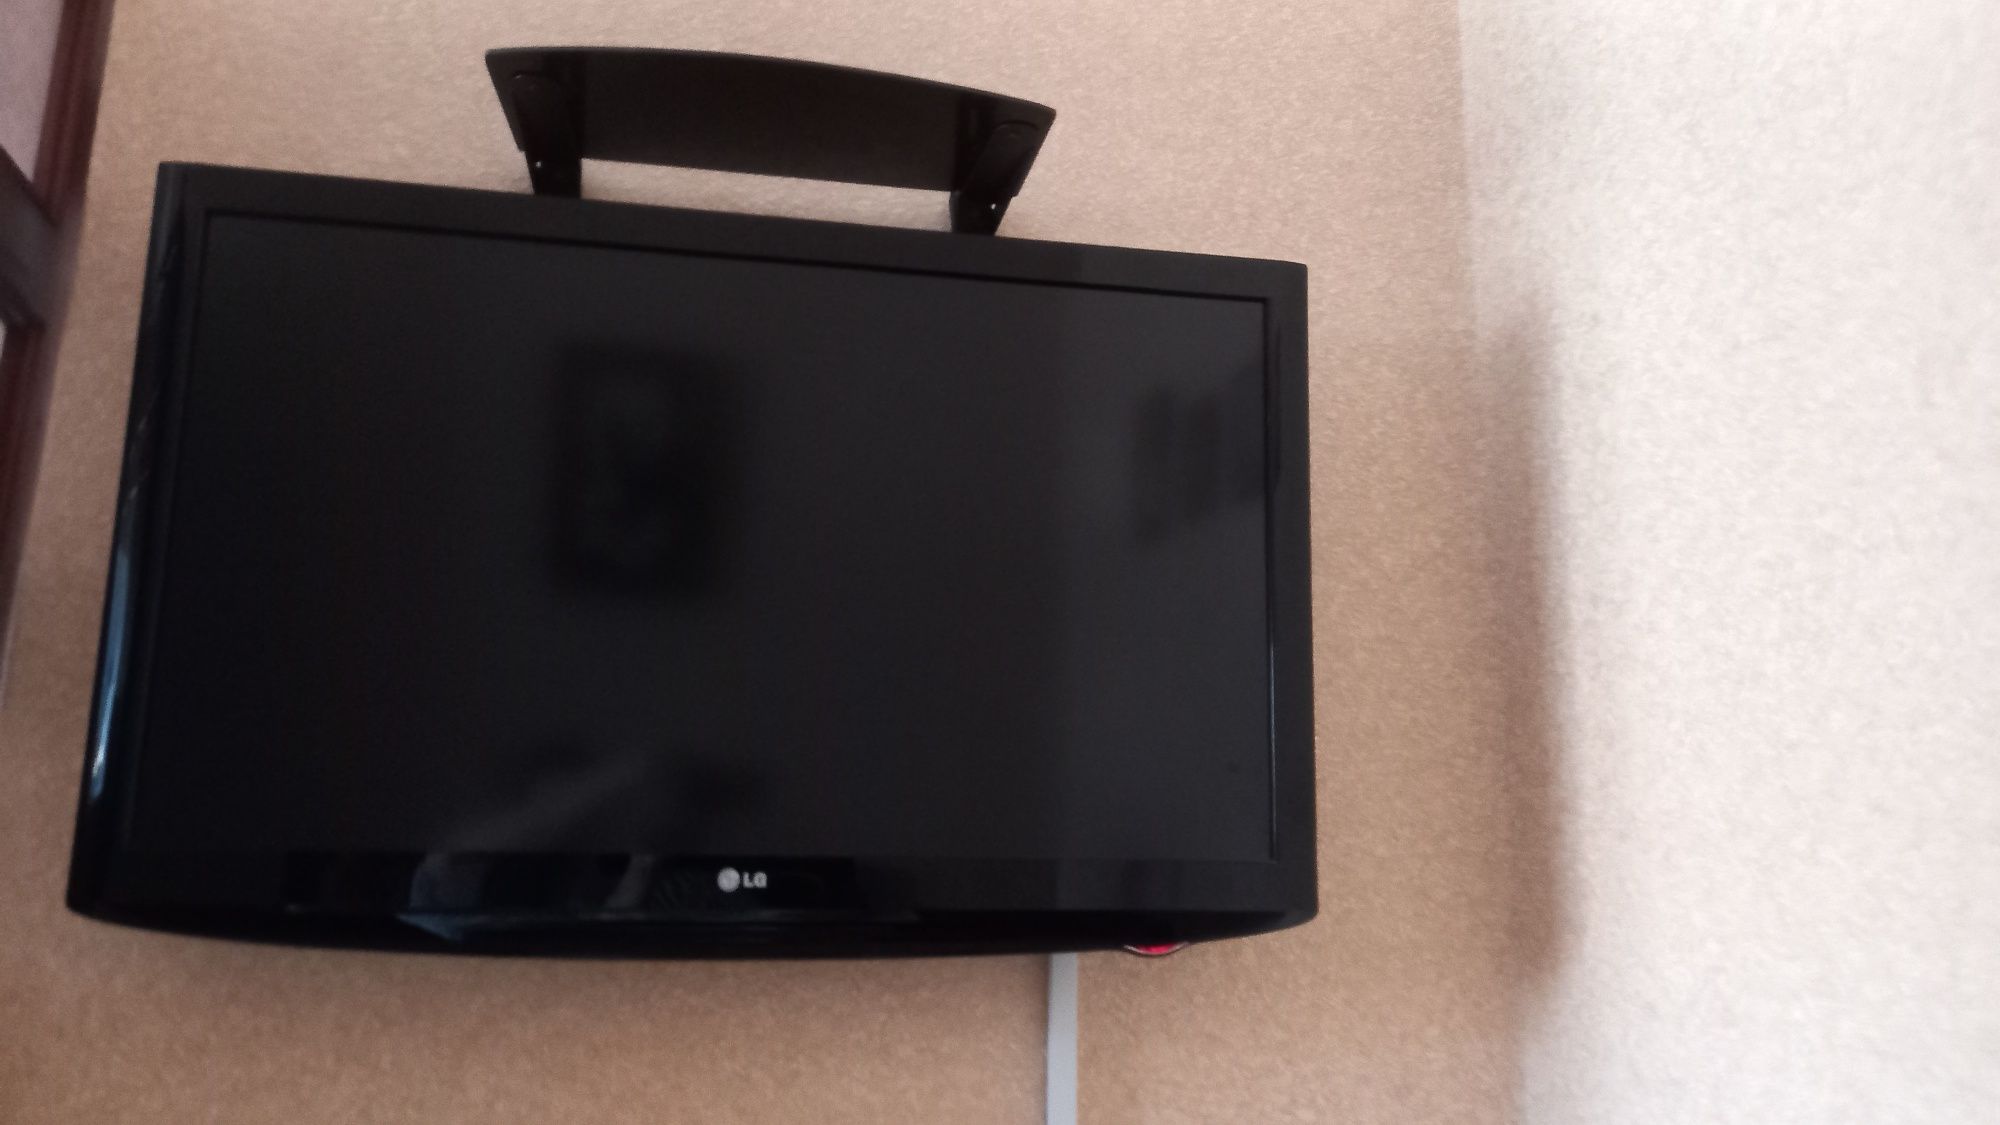 Продается телевизор LG в отличном состоянии! Диогональ 105см.